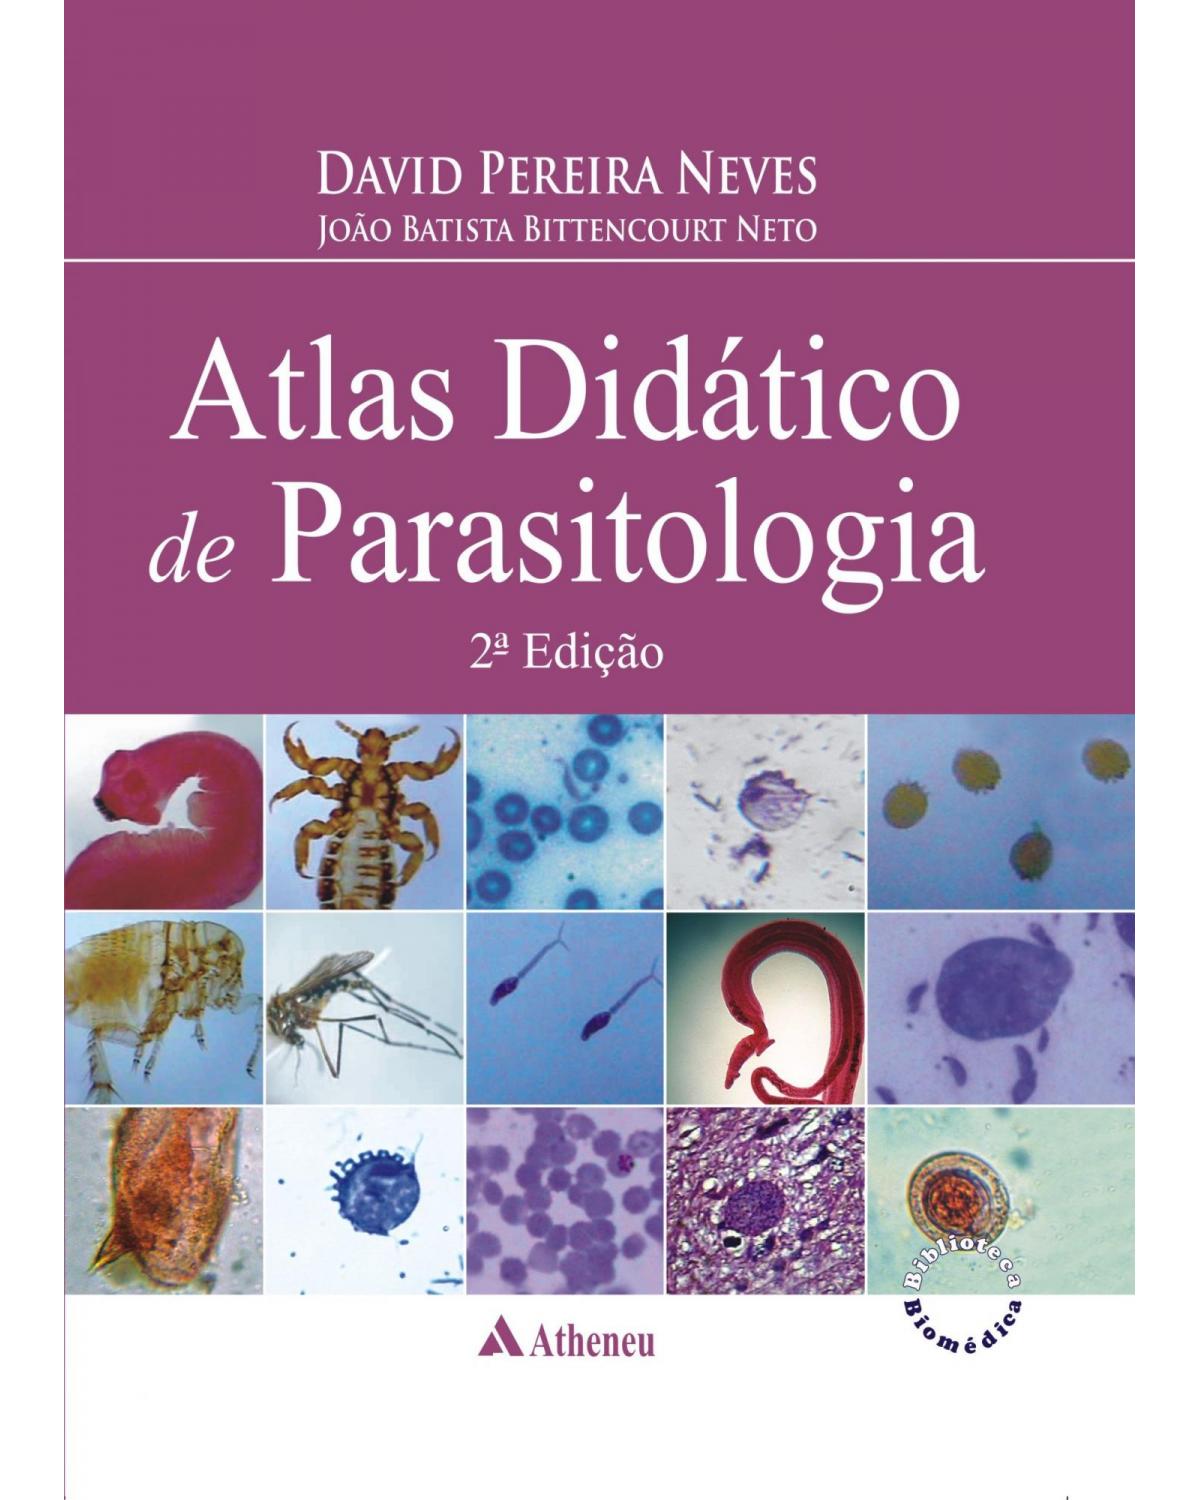 Atlas didático de parasitologia - 2ª Edição | 2010